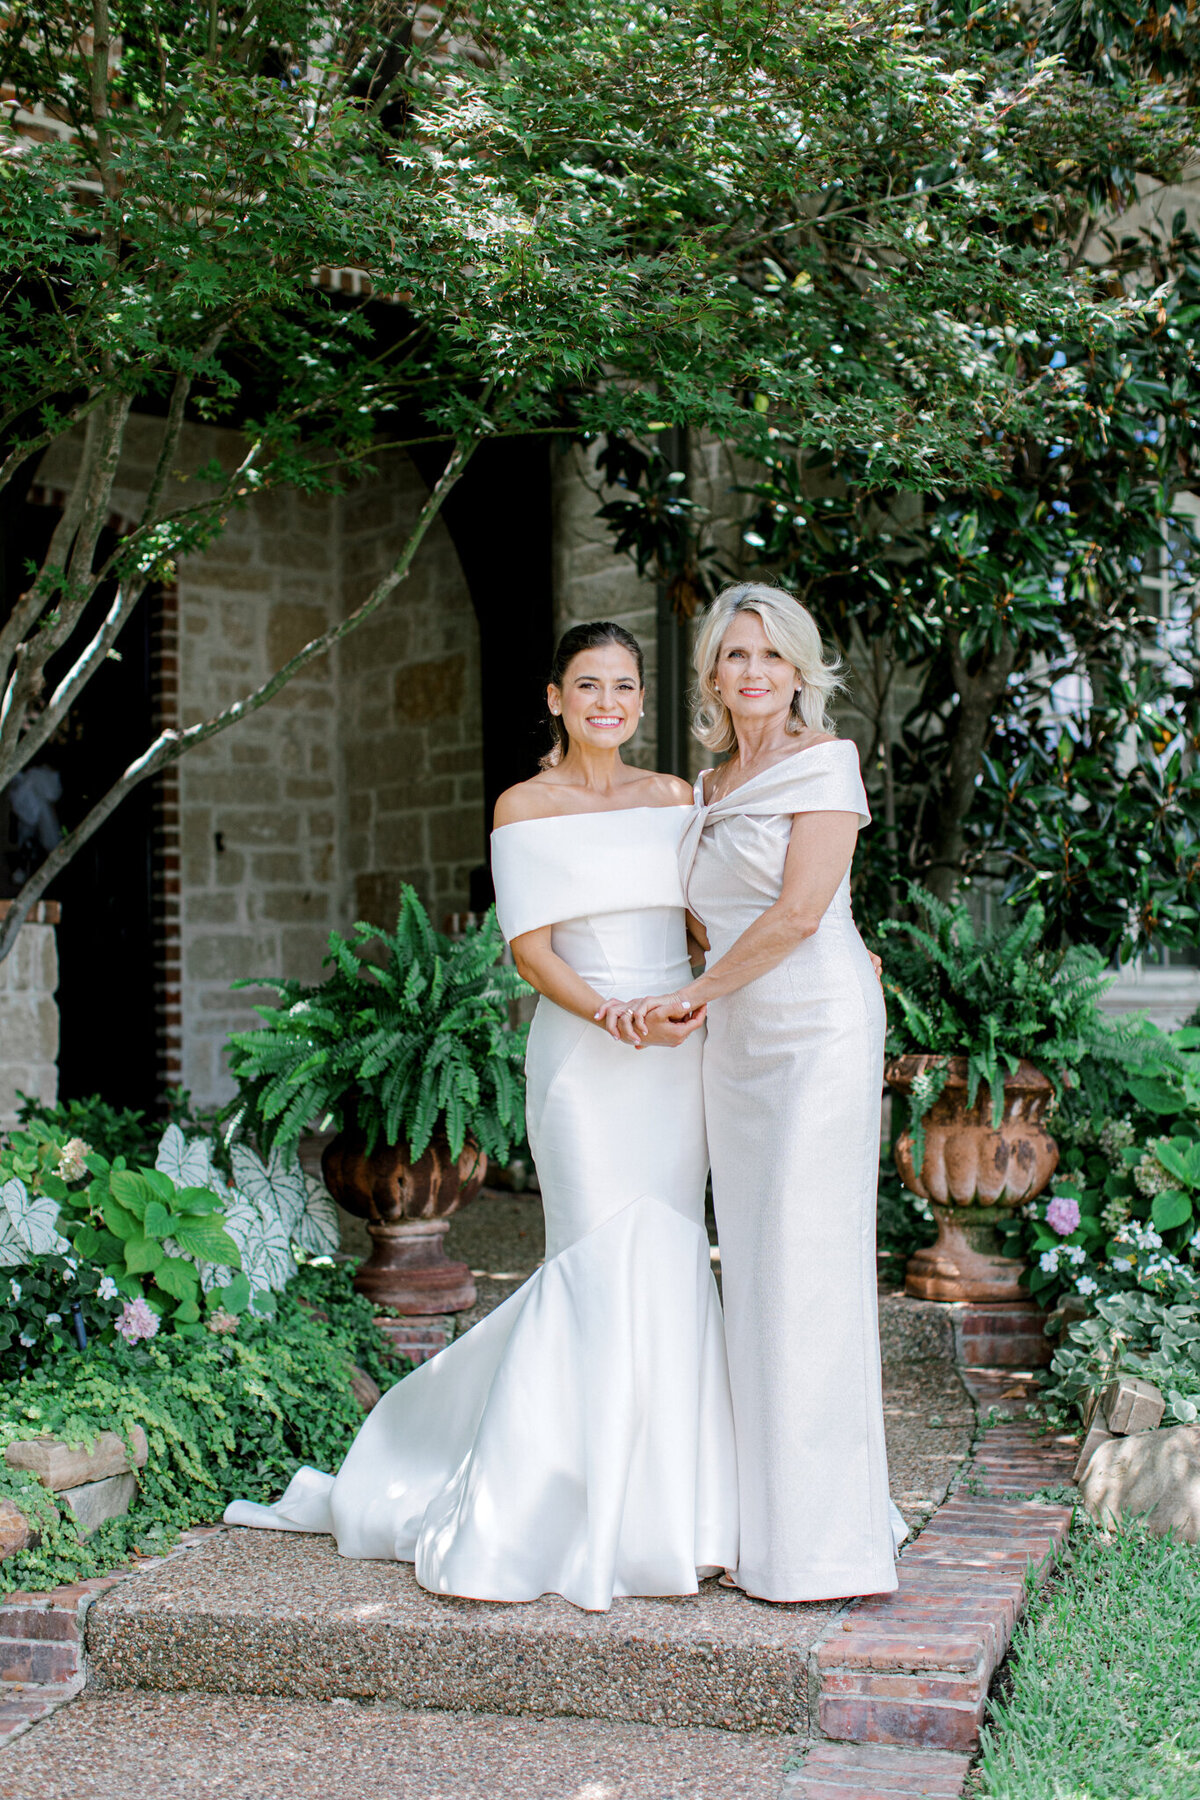 Annie & Logan's Wedding | Dallas Wedding Photographer | Sami Kathryn Photography-49